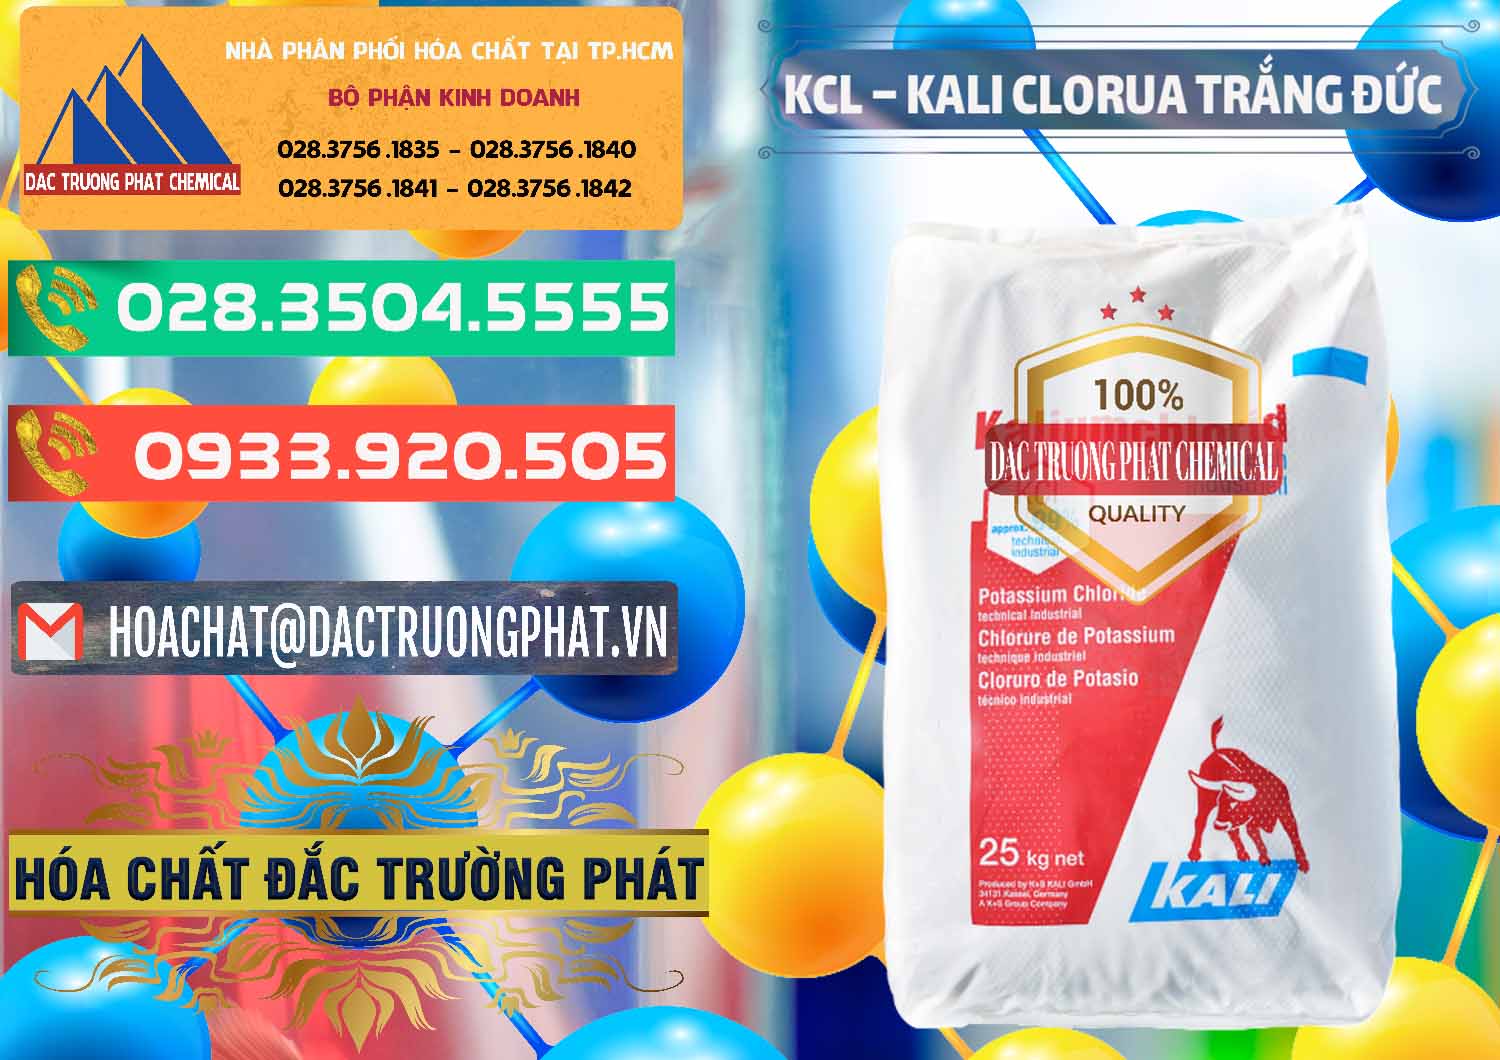 Đơn vị chuyên phân phối và bán KCL – Kali Clorua Trắng Đức Germany - 0086 - Công ty phân phối & cung cấp hóa chất tại TP.HCM - congtyhoachat.com.vn